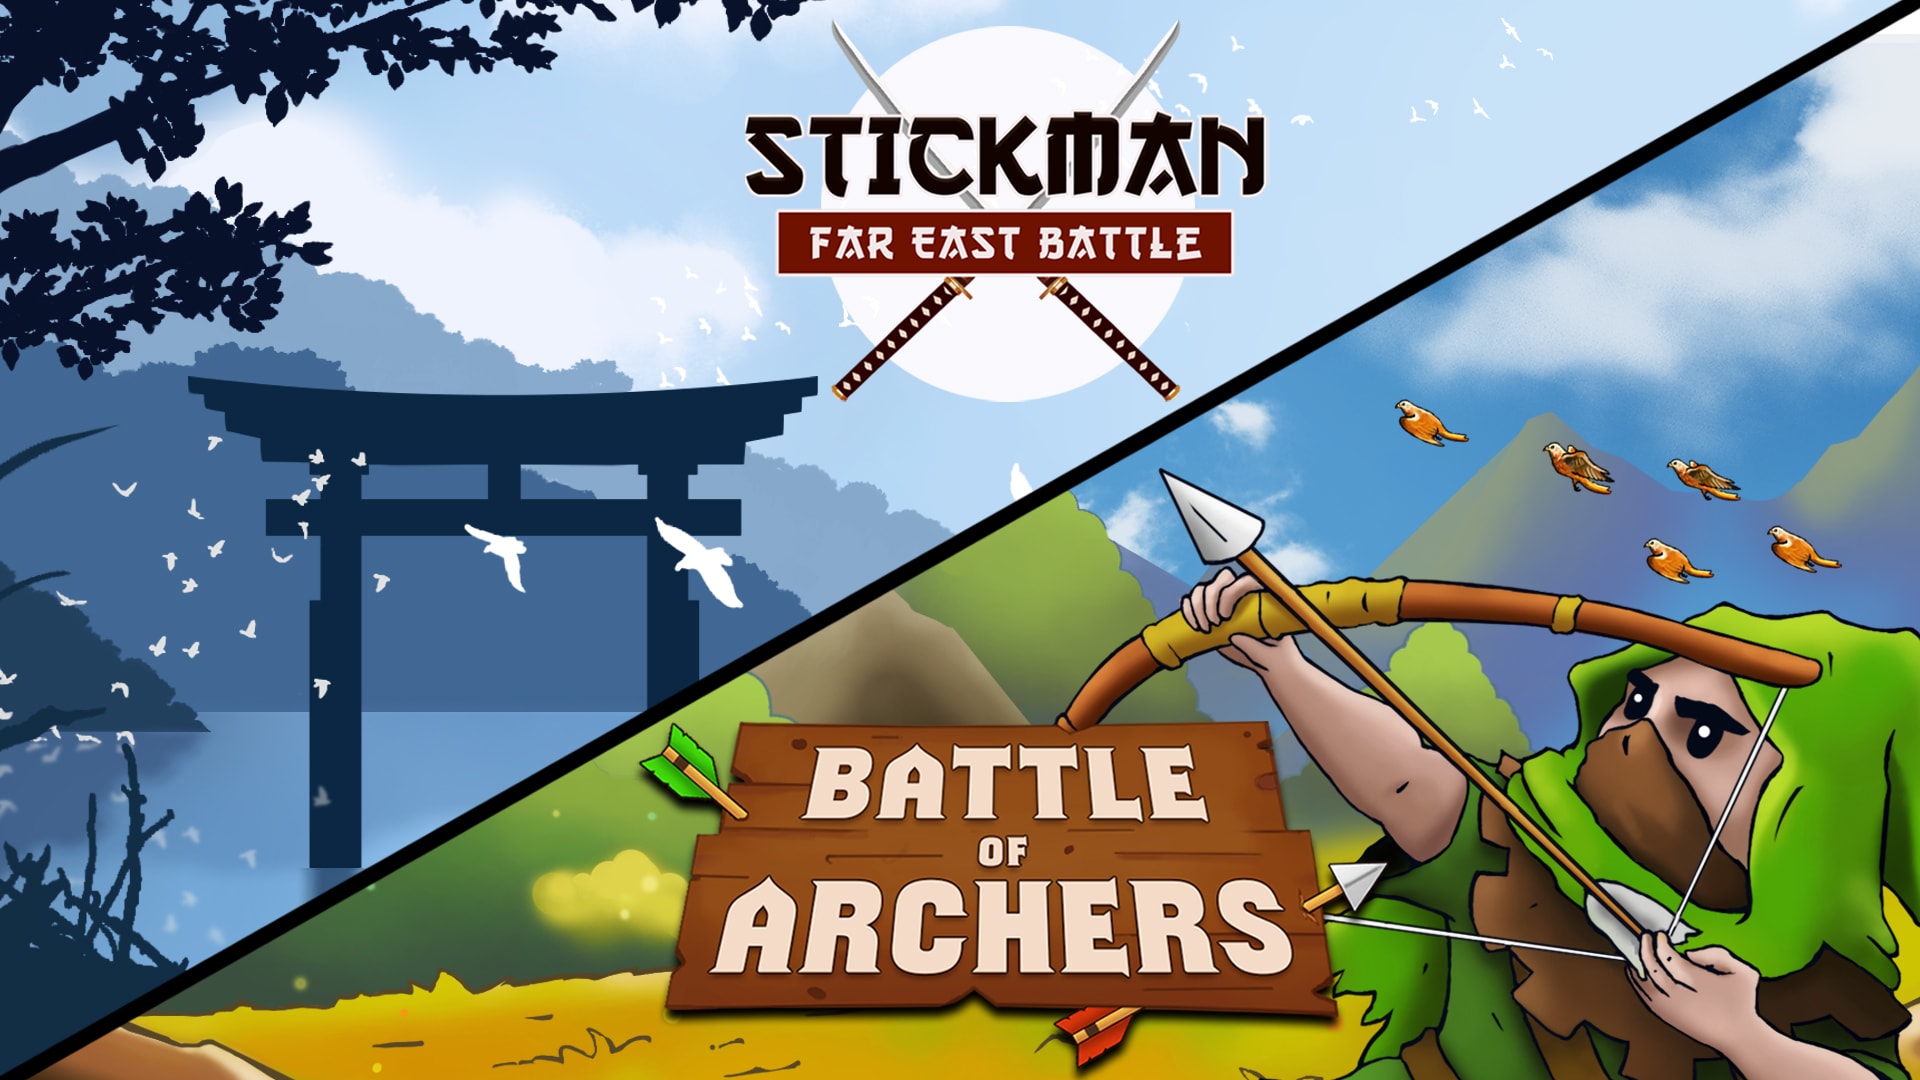 Battle Bundle: Stickman: Far East Battle and Battle of Archers